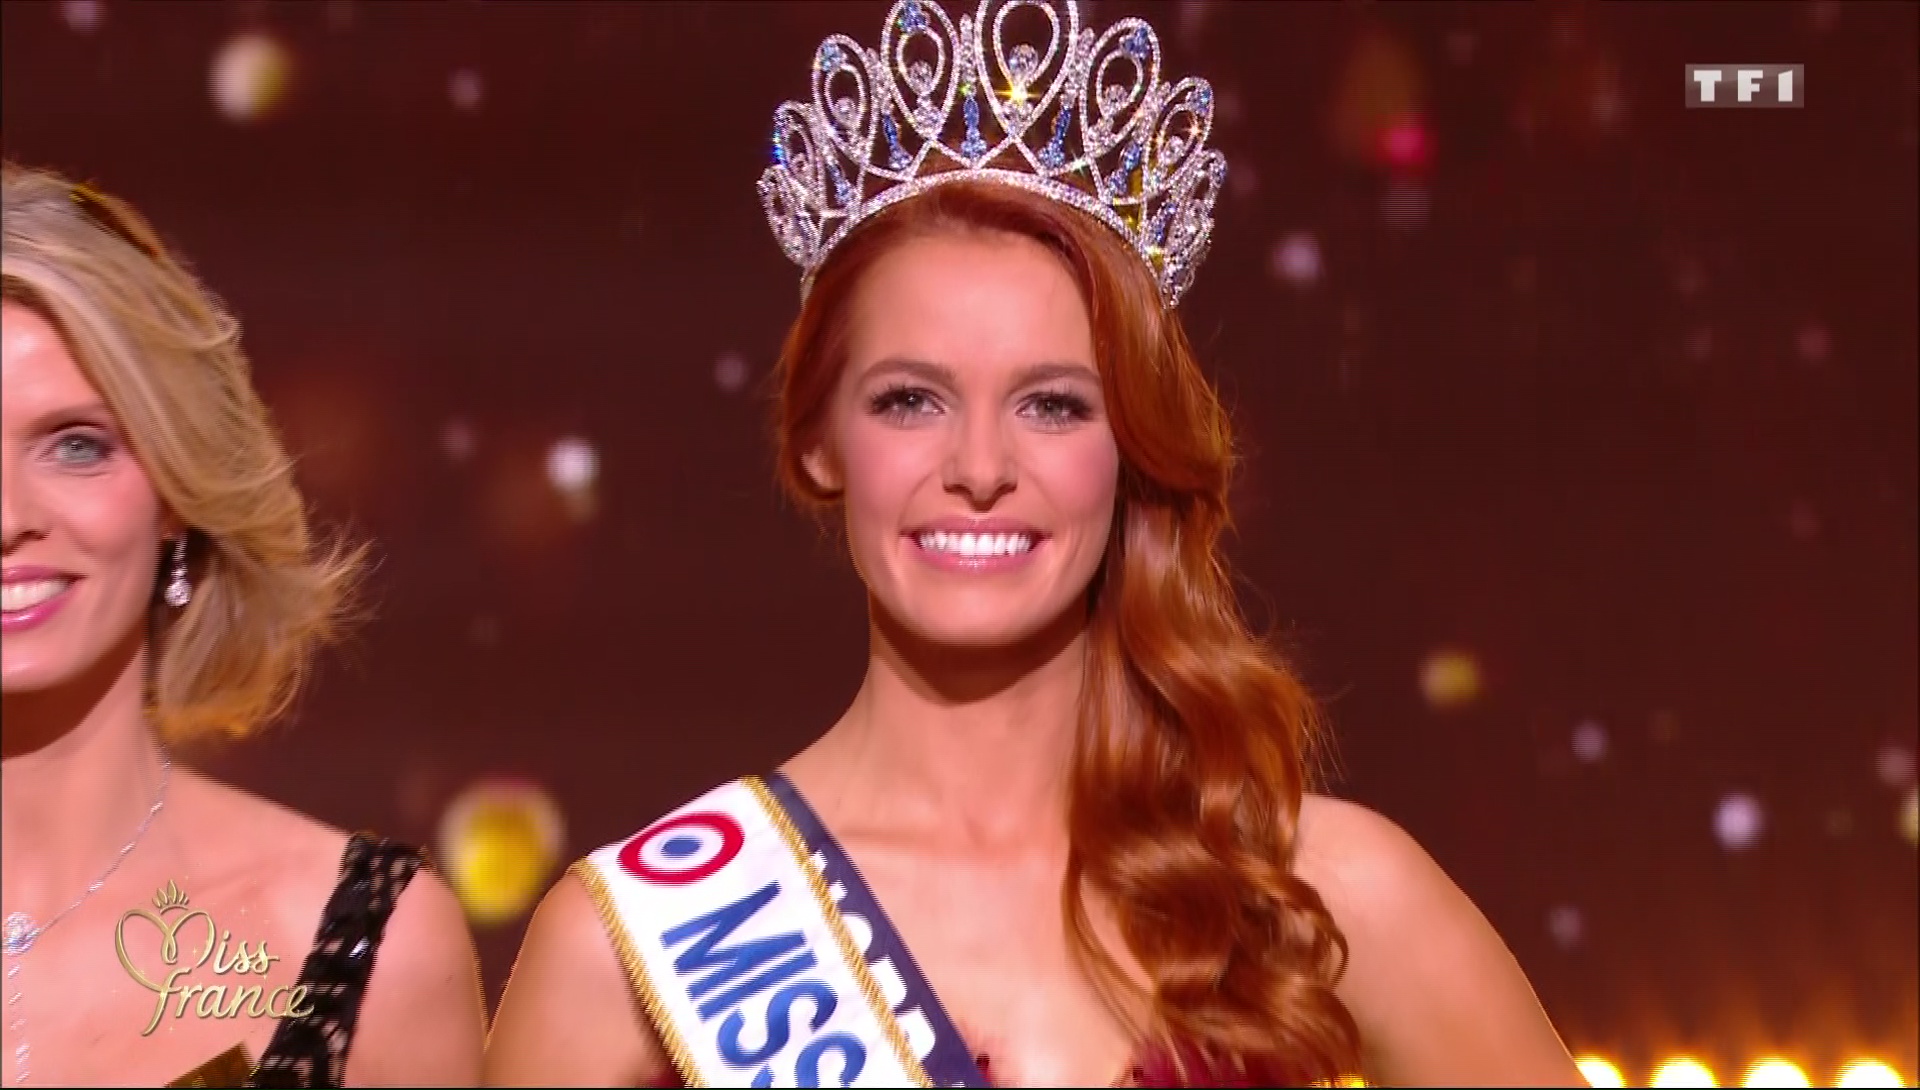 EN DIRECT - Miss France 2018 : Résultats de l'élection des miss